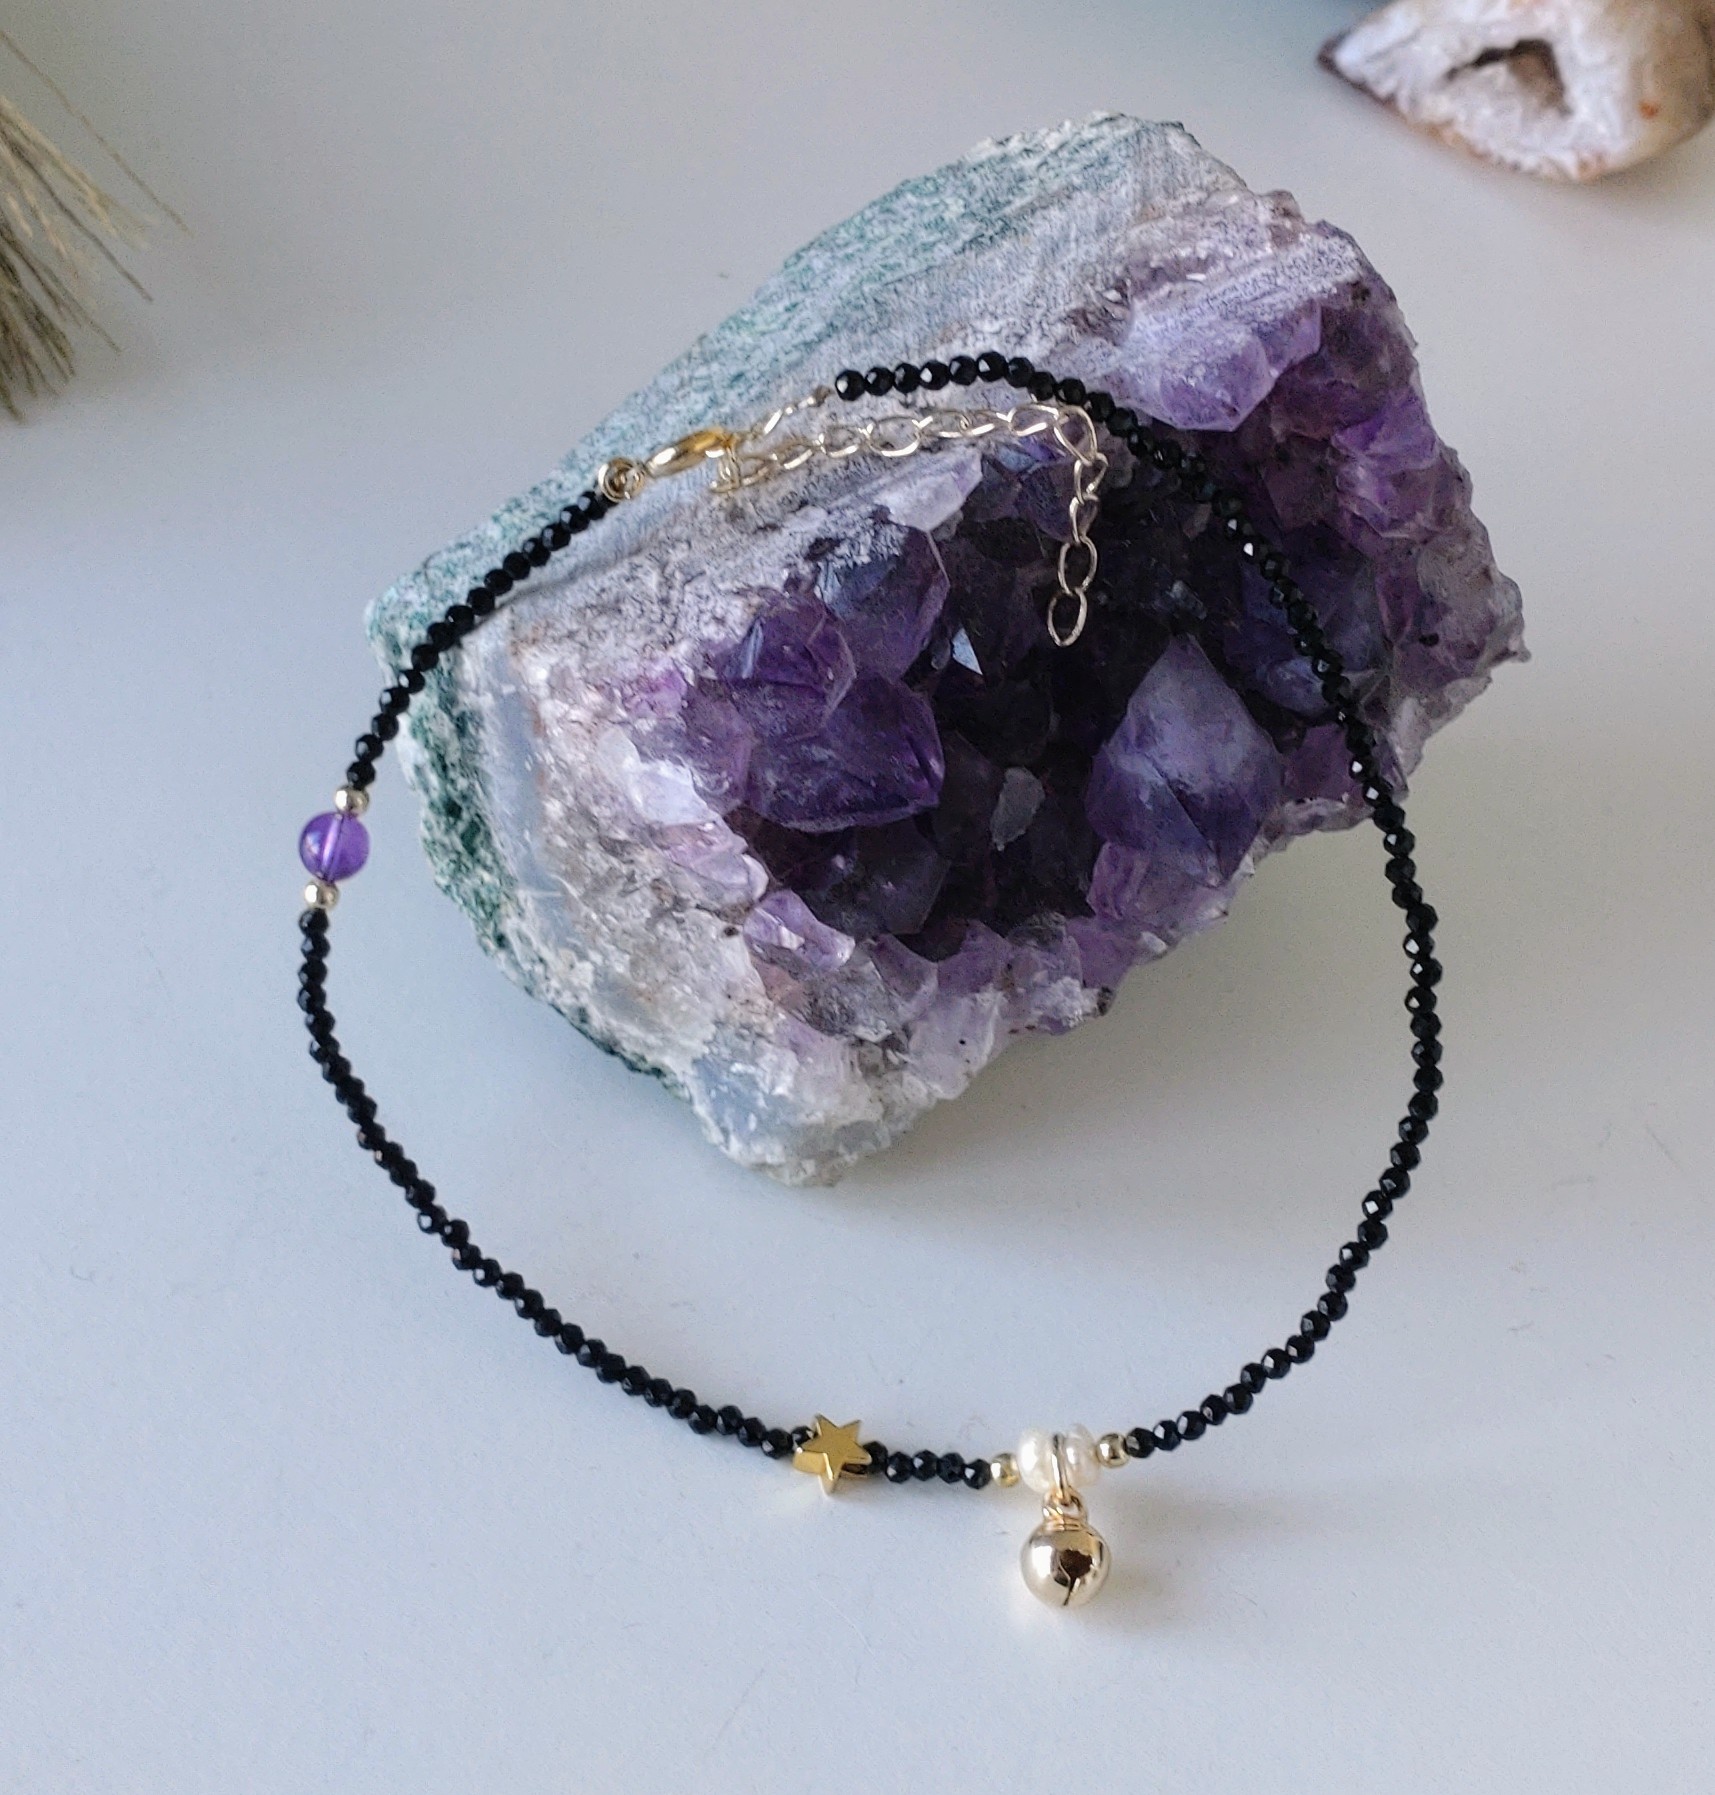 Ankelsmycke med Obsidian, Ametist, pärlor och guldfärgade detaljer